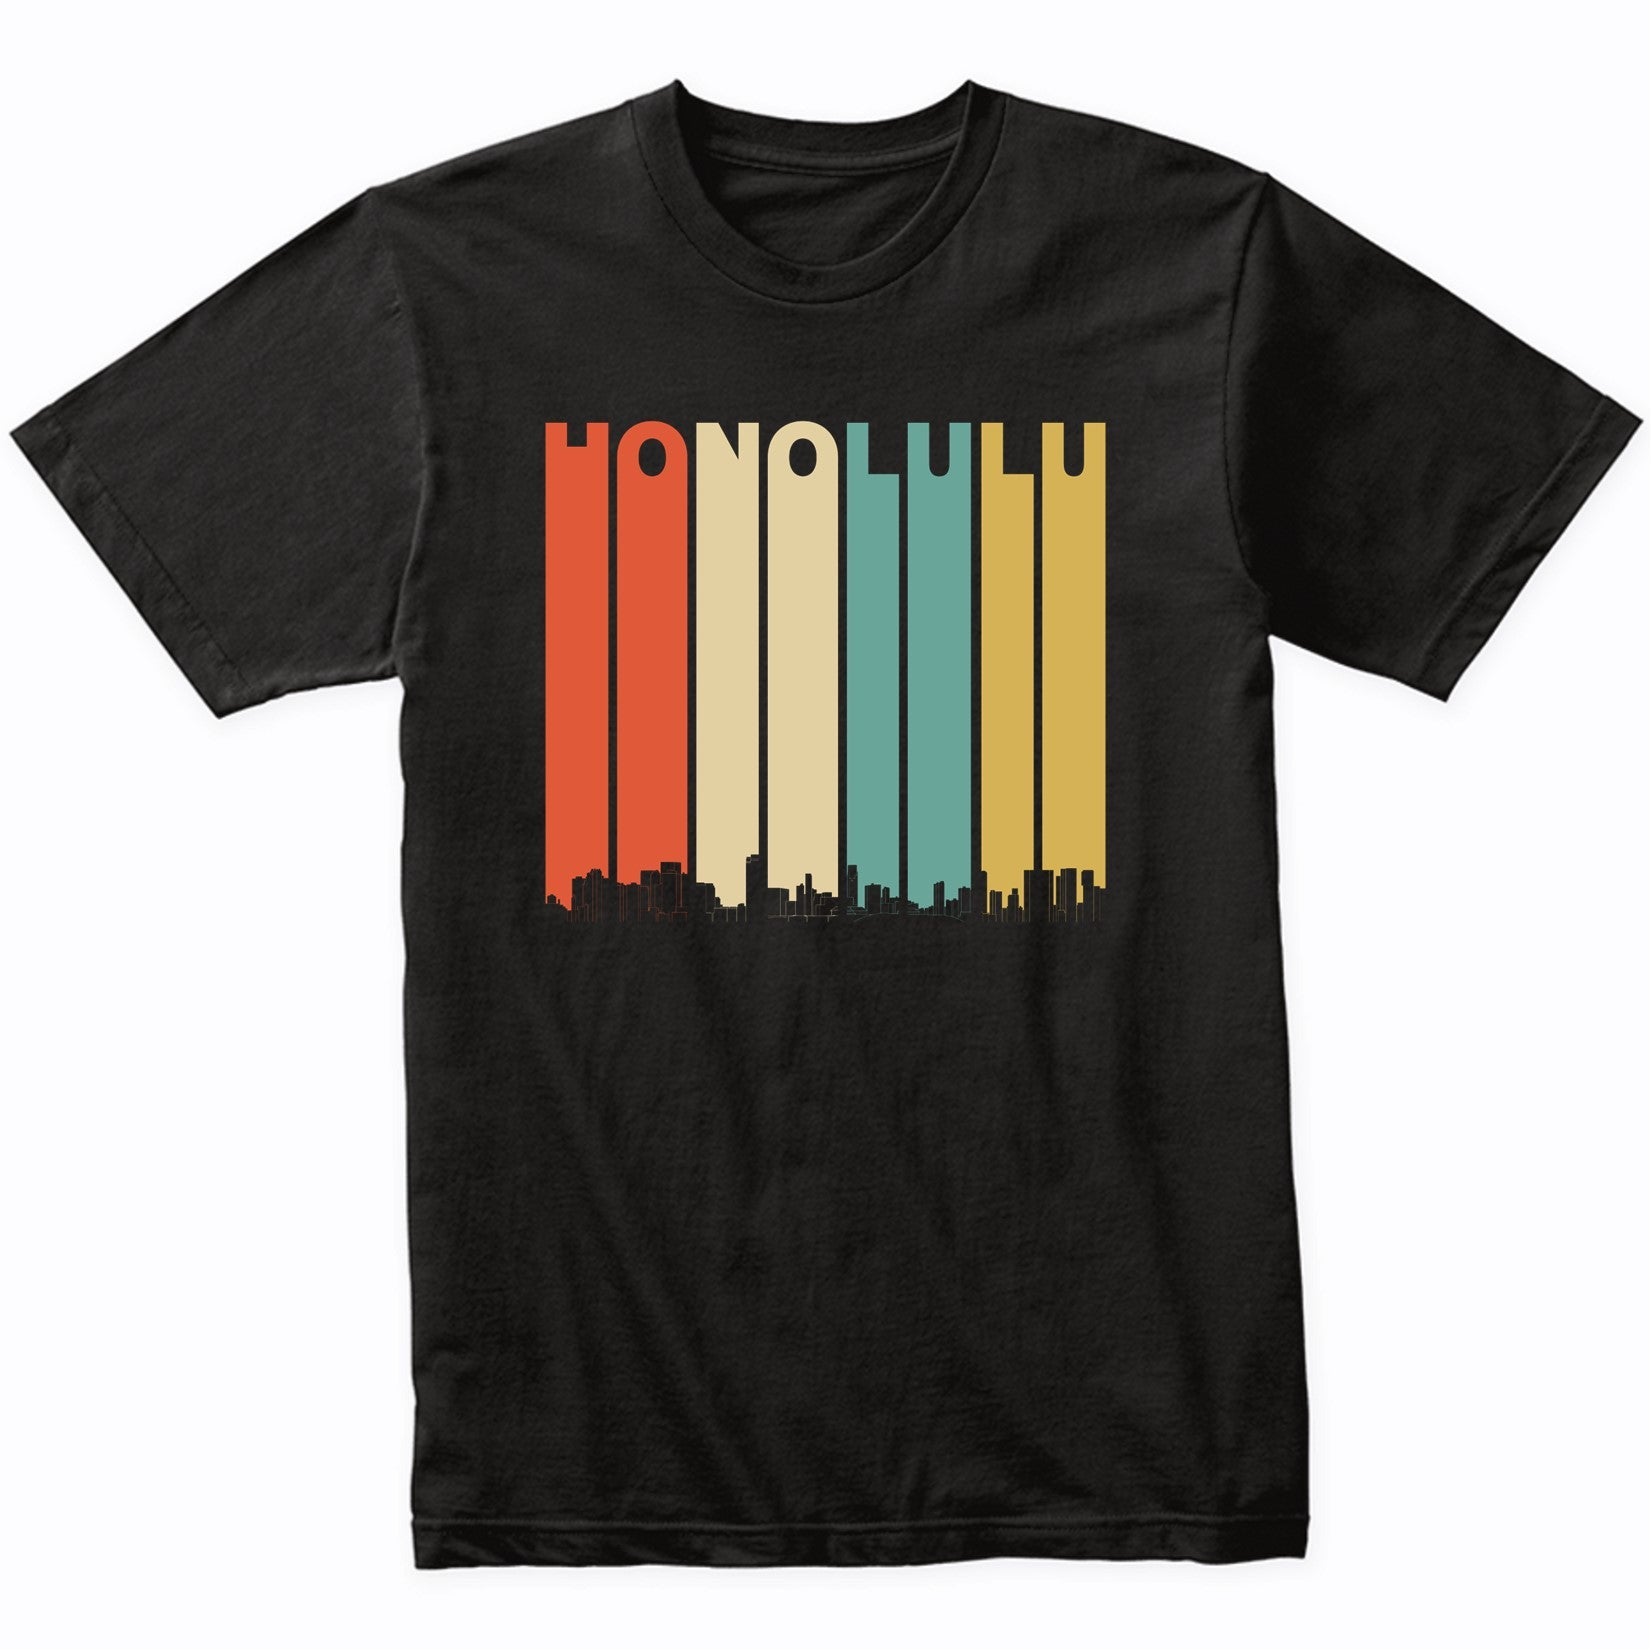 Vintage 1970's Style Honolulu Hawaii Skyline T-Shirt